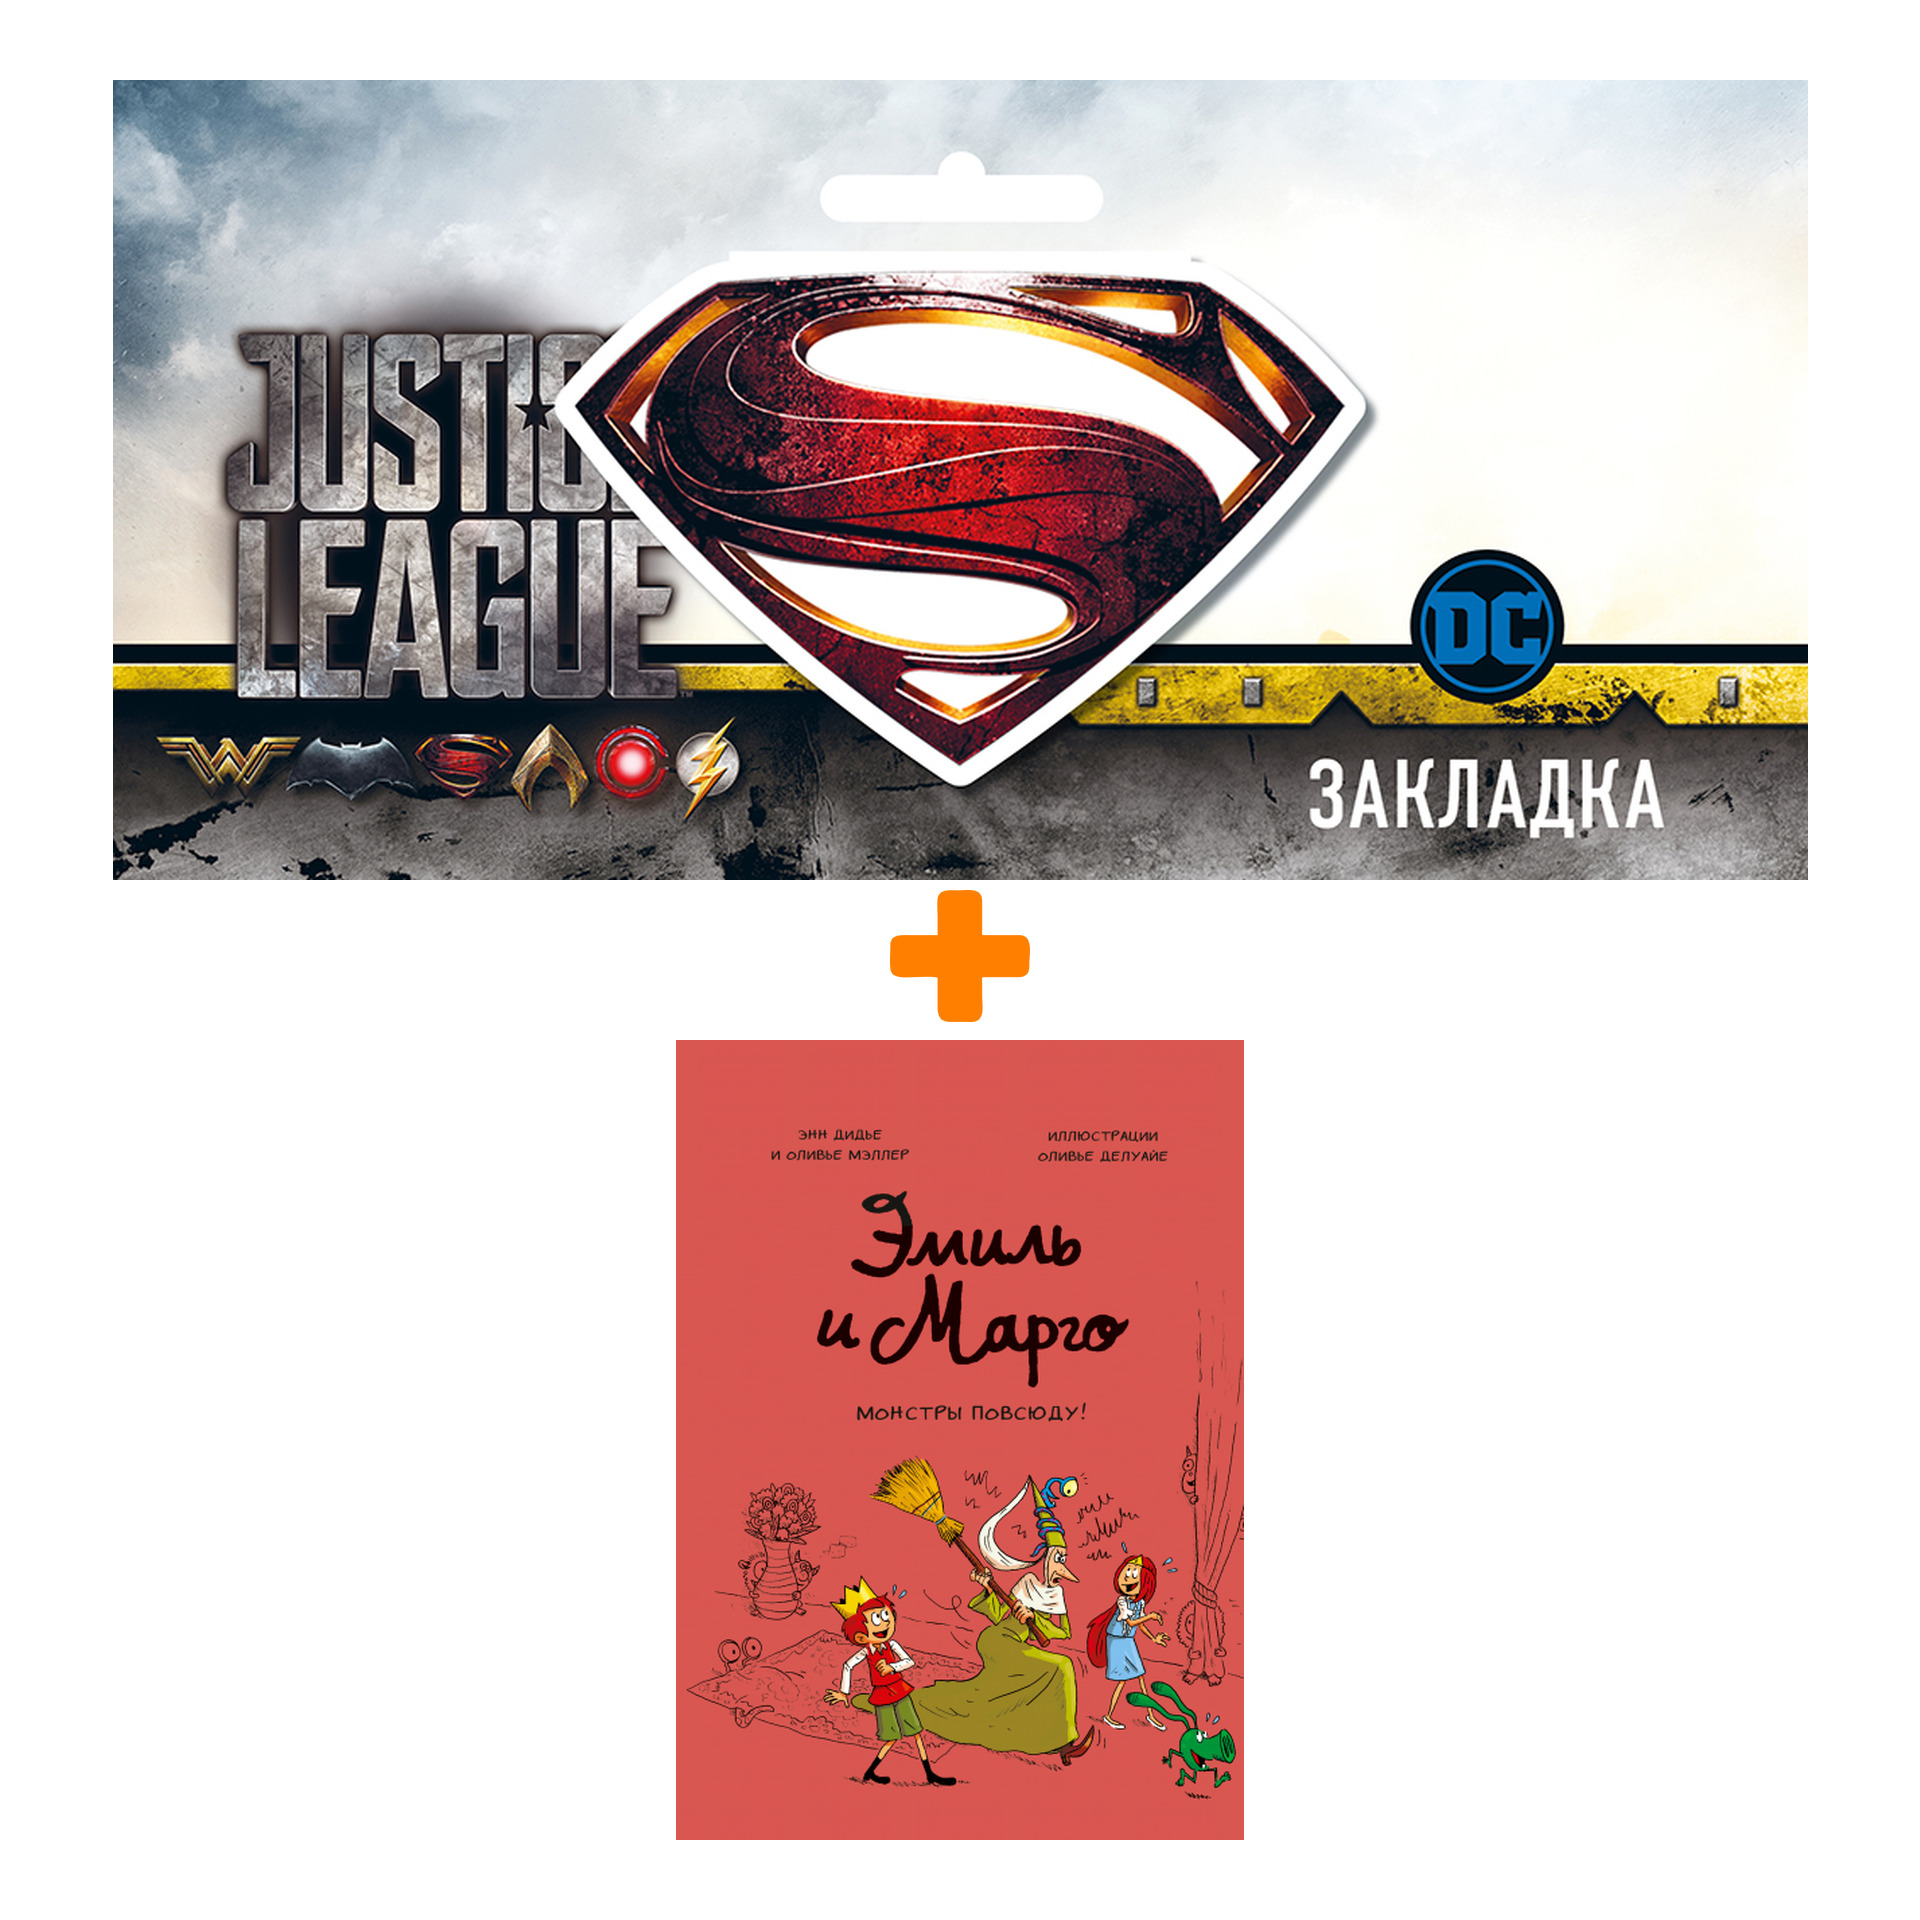 Набор Комикс Эмиль и Марго. Монстры повсюду! + Закладка DC Justice League Superman магнитная